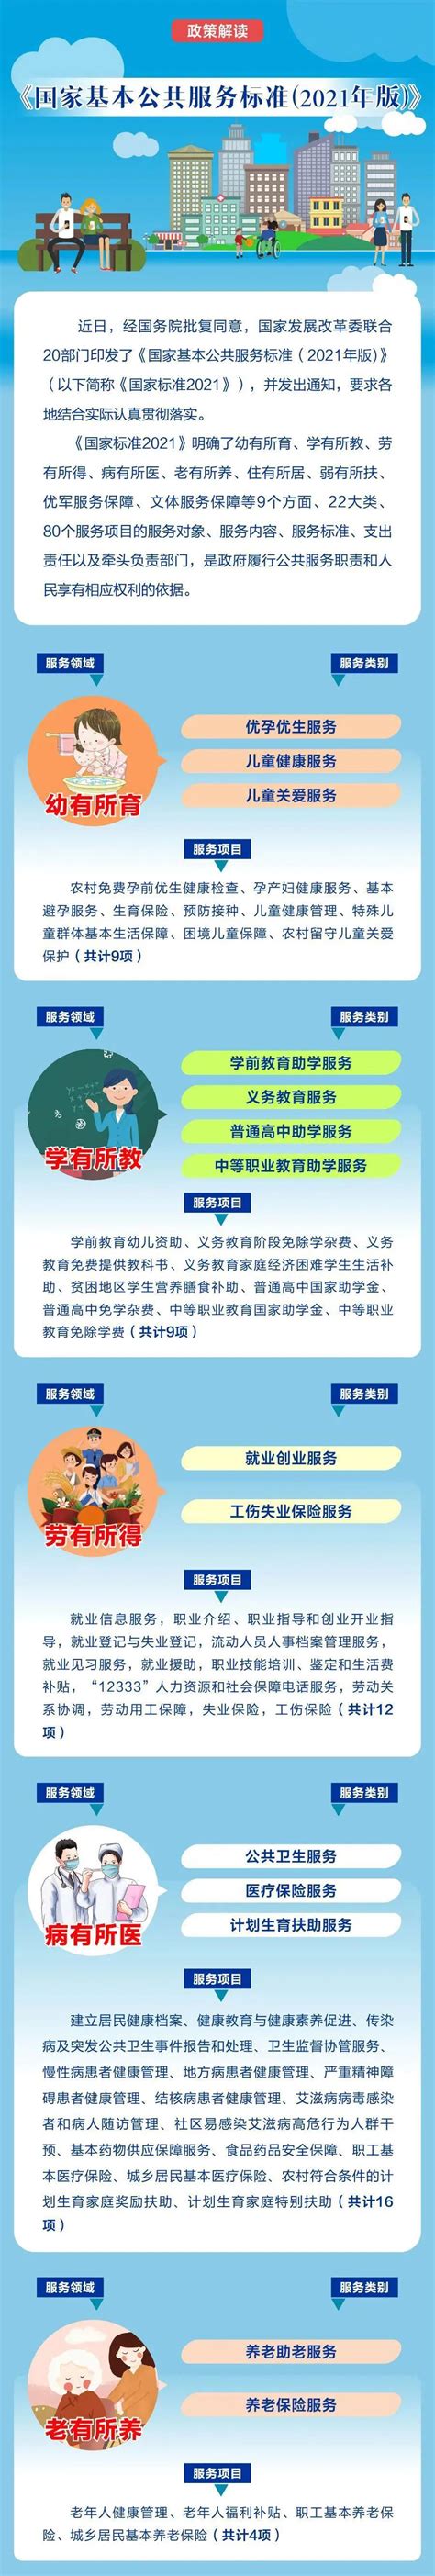 杭州市首批示范型社区服务综合体名单发布-杭州新闻中心-杭州网